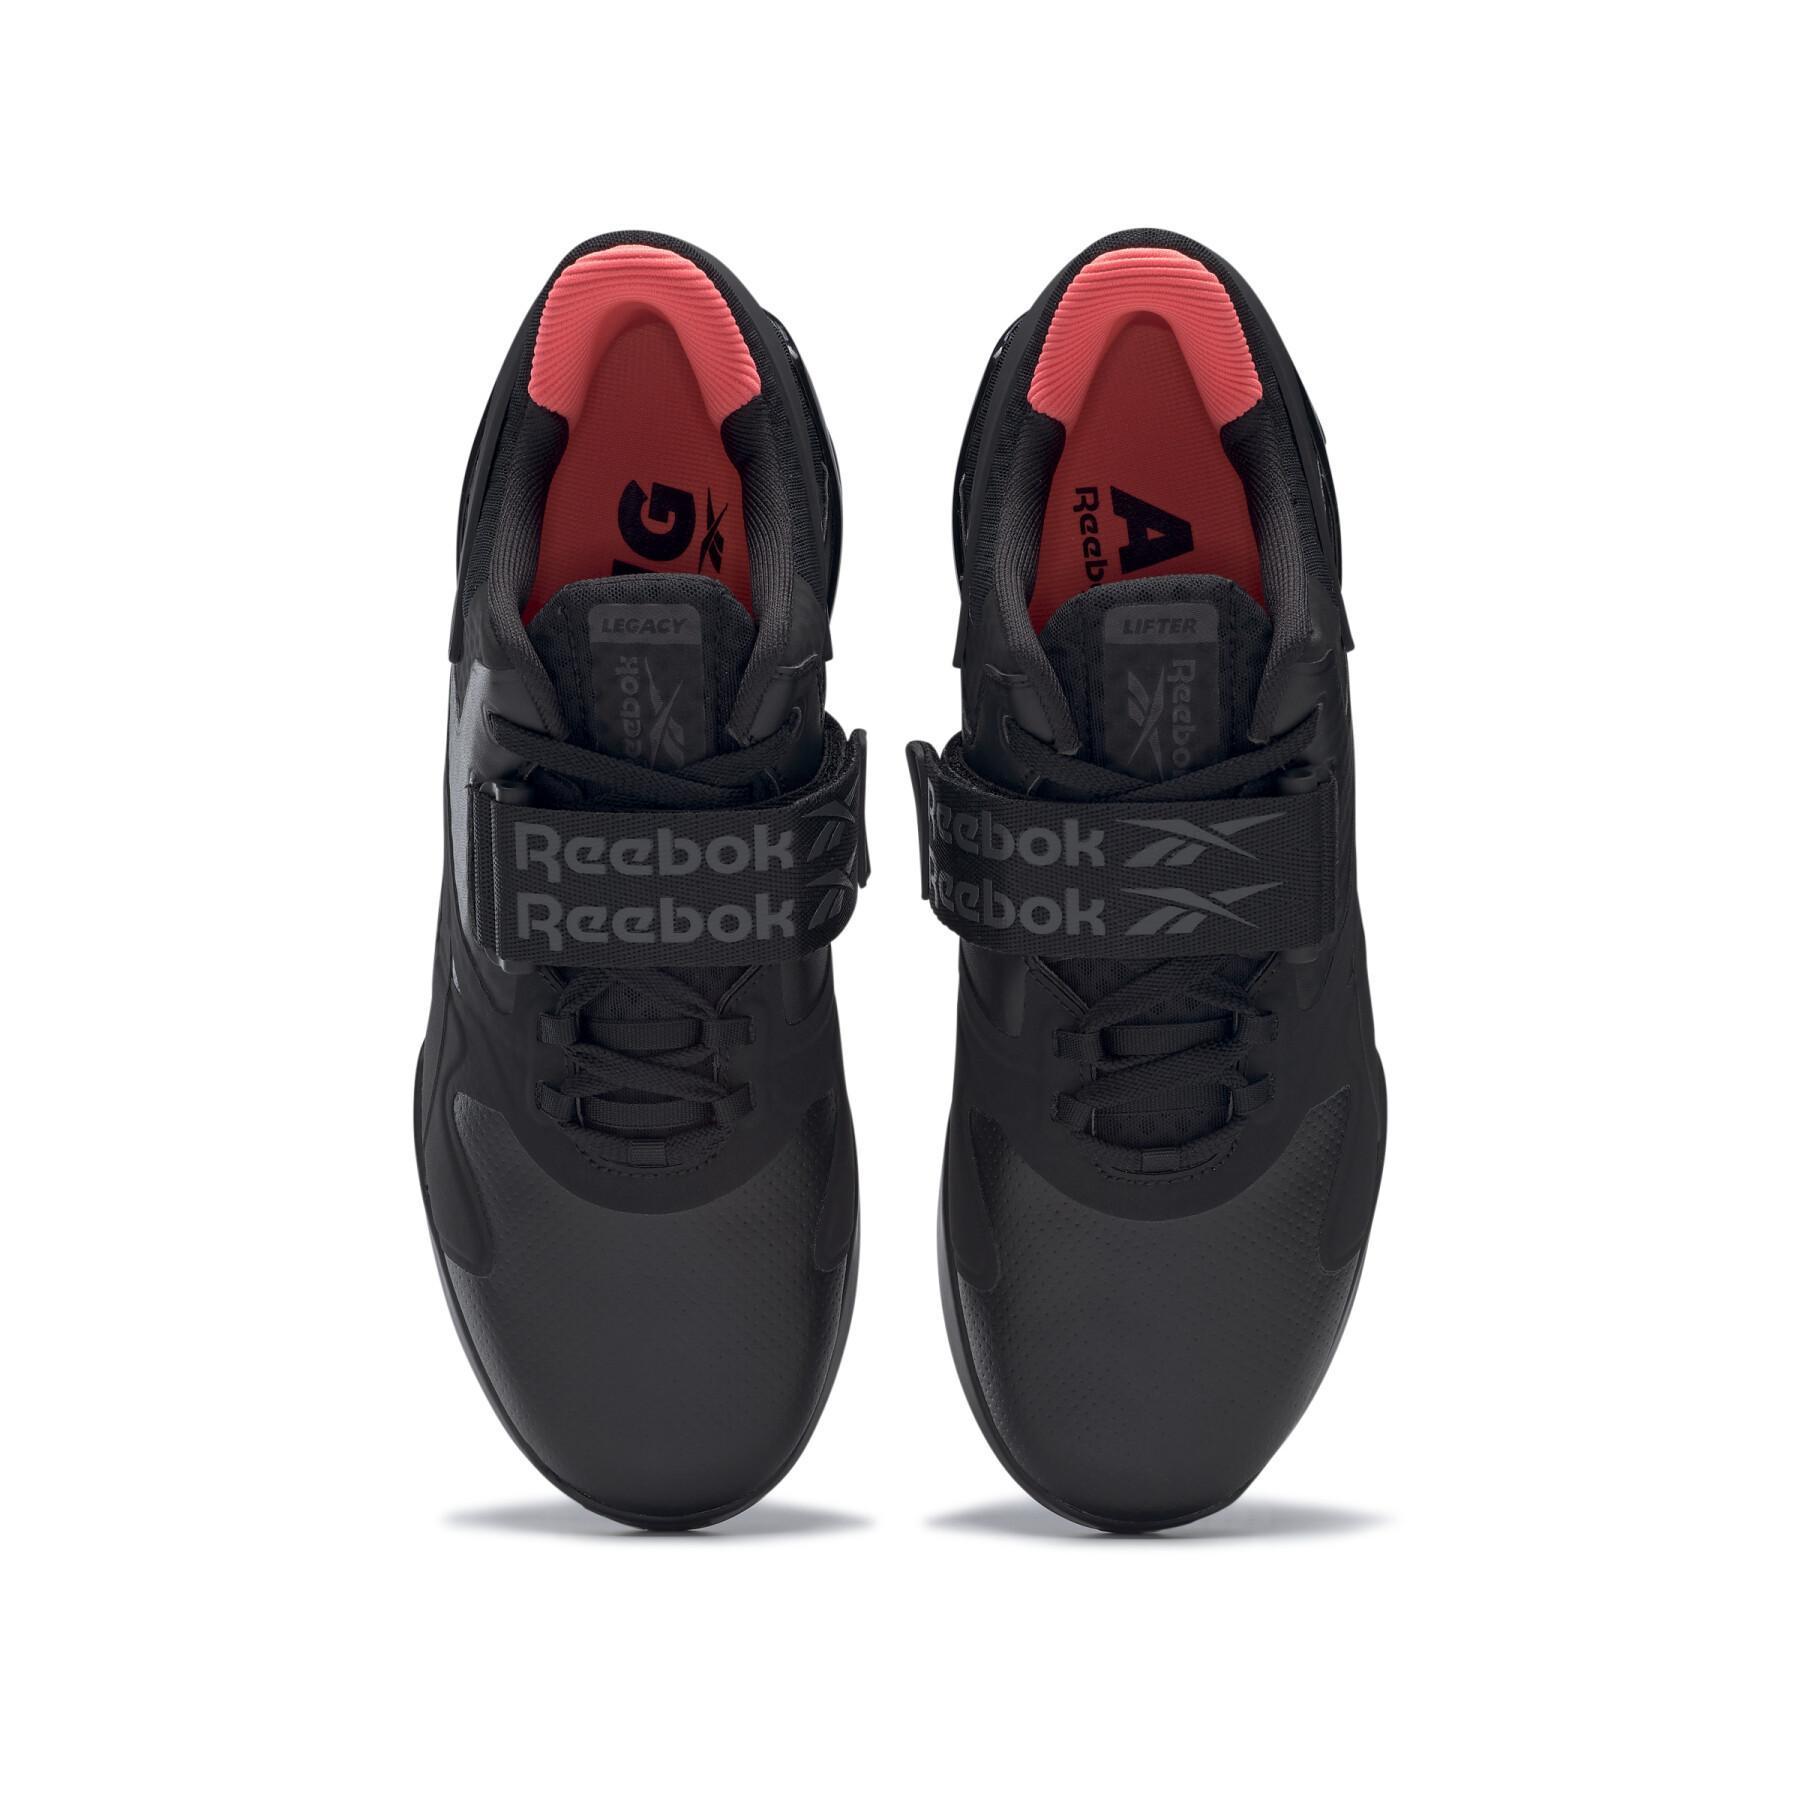 Schuhe Reebok Legacy Lifter II